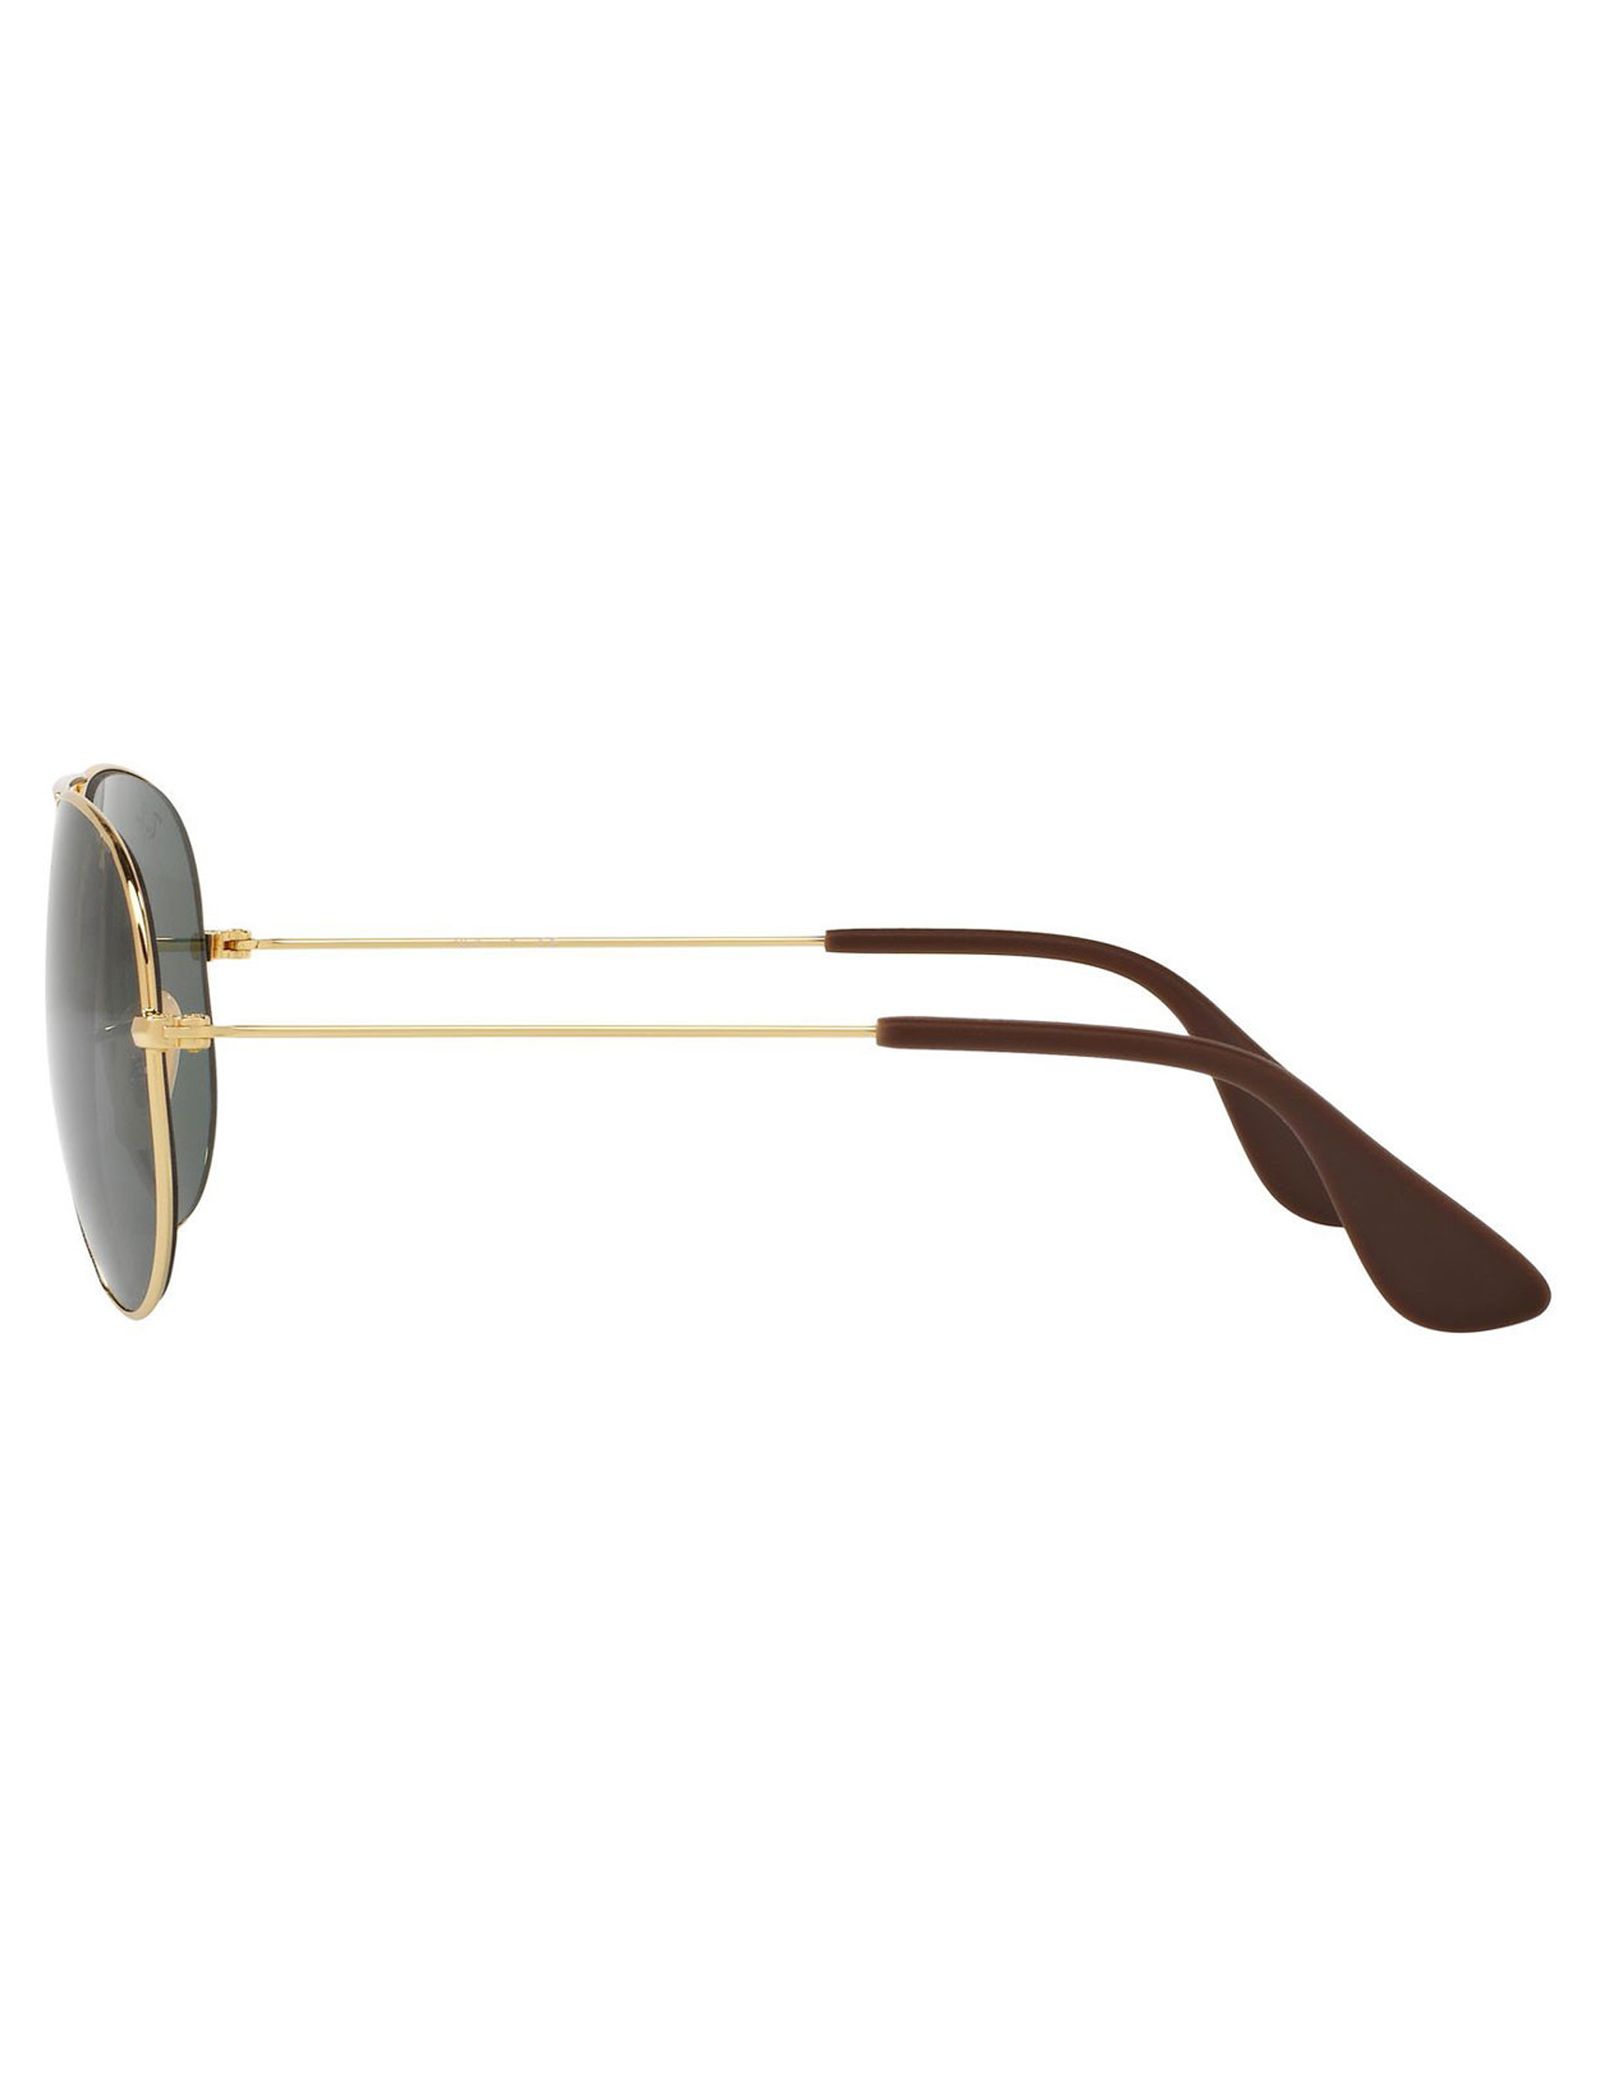 عینک آفتابی ری بن مدل 3558-001/71 - طلایی - 4